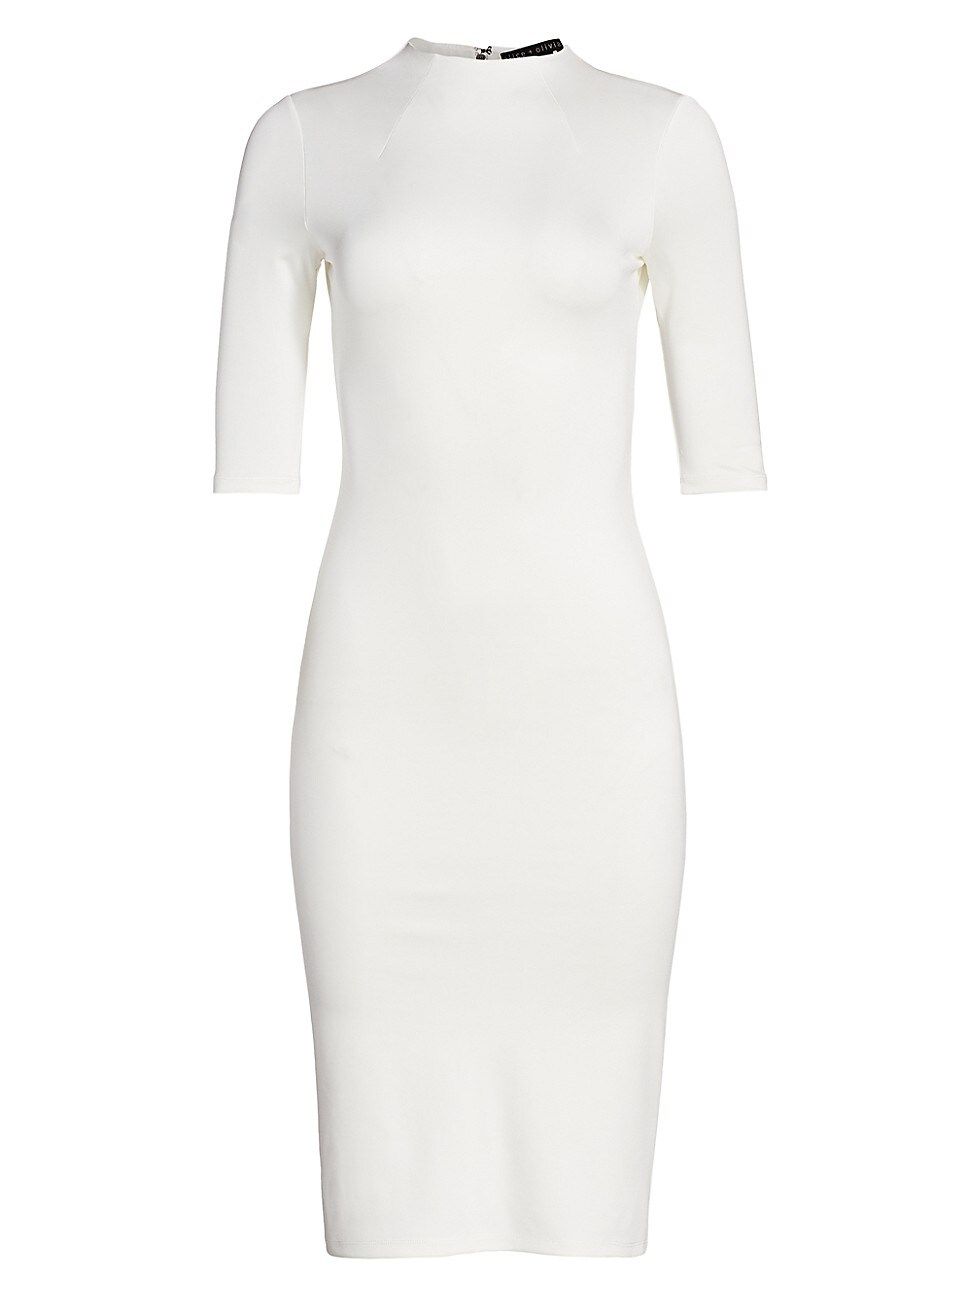 Alice + Olivia Women's Delora Knit Bodycon Dress - Off White - Size 10 | Saks Fifth Avenue